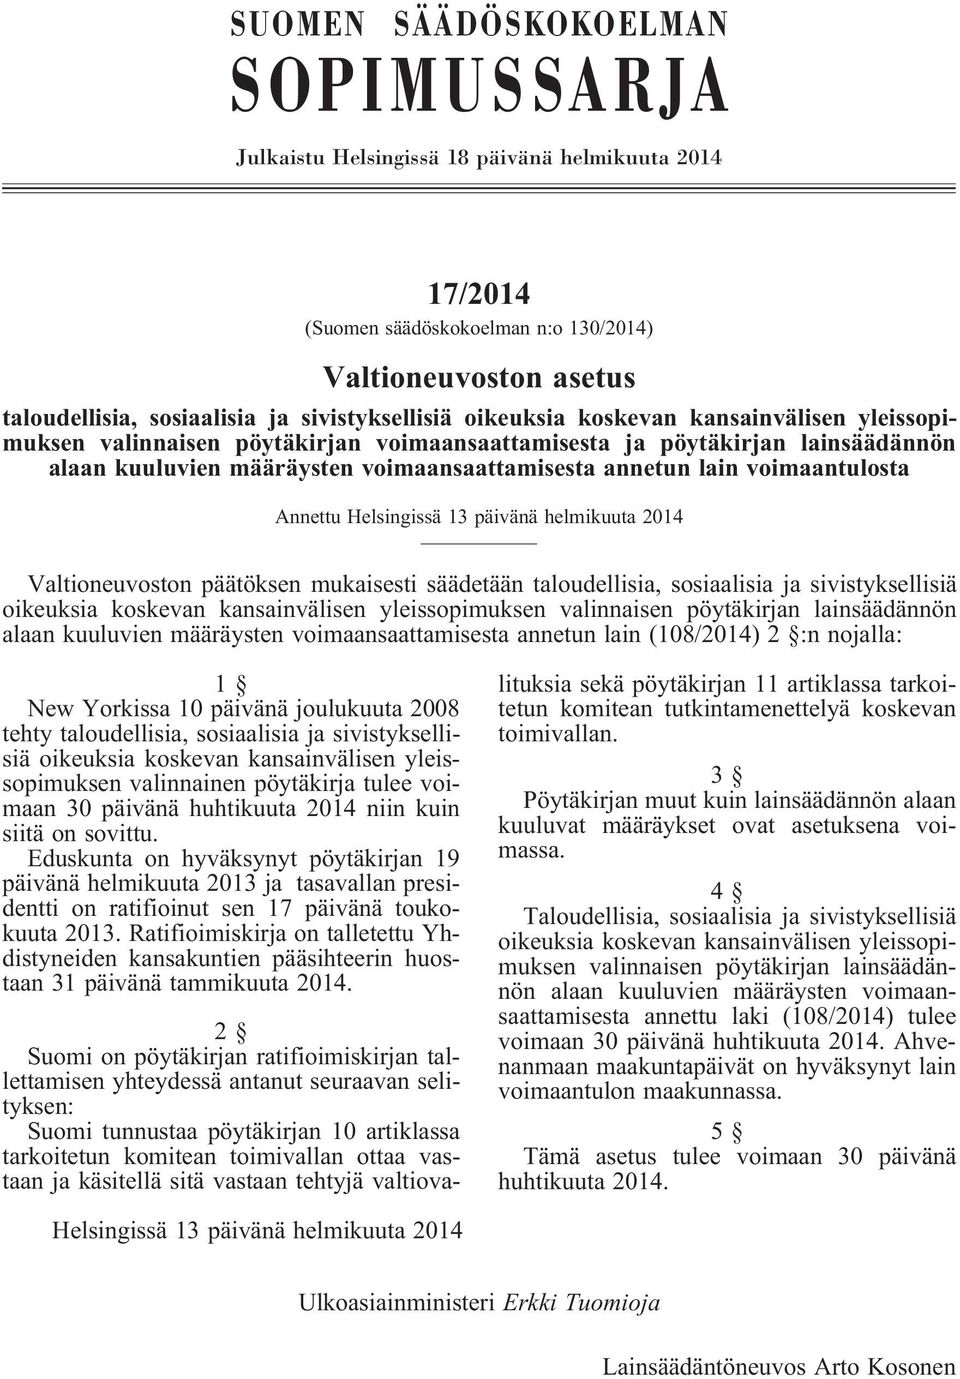 Annettu Helsingissä 13 päivänä helmikuuta 2014 Valtioneuvoston päätöksen mukaisesti säädetään taloudellisia, sosiaalisia ja sivistyksellisiä oikeuksia koskevan kansainvälisen yleissopimuksen